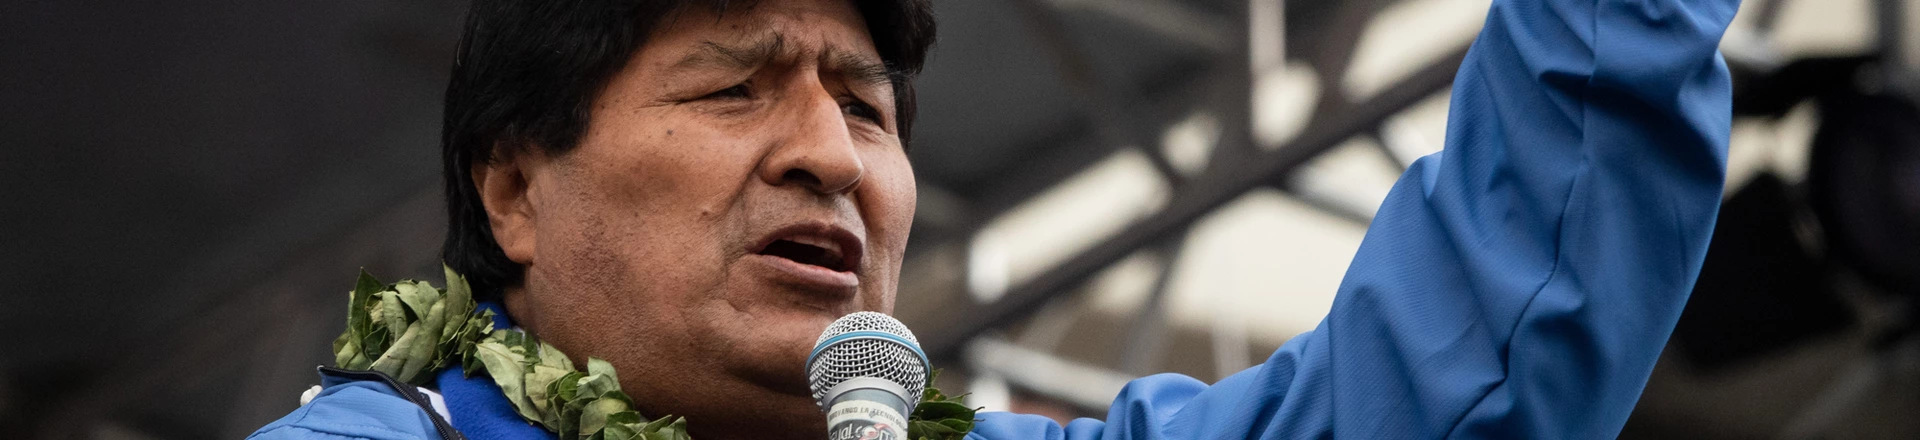 Evo Morales, ex-presidente da Bolívia, participa de evento comemorando os 26 anos de fundação do partido governista Movimento ao Socialismo (MAS), em La Paz, em 29 de março de 2021.